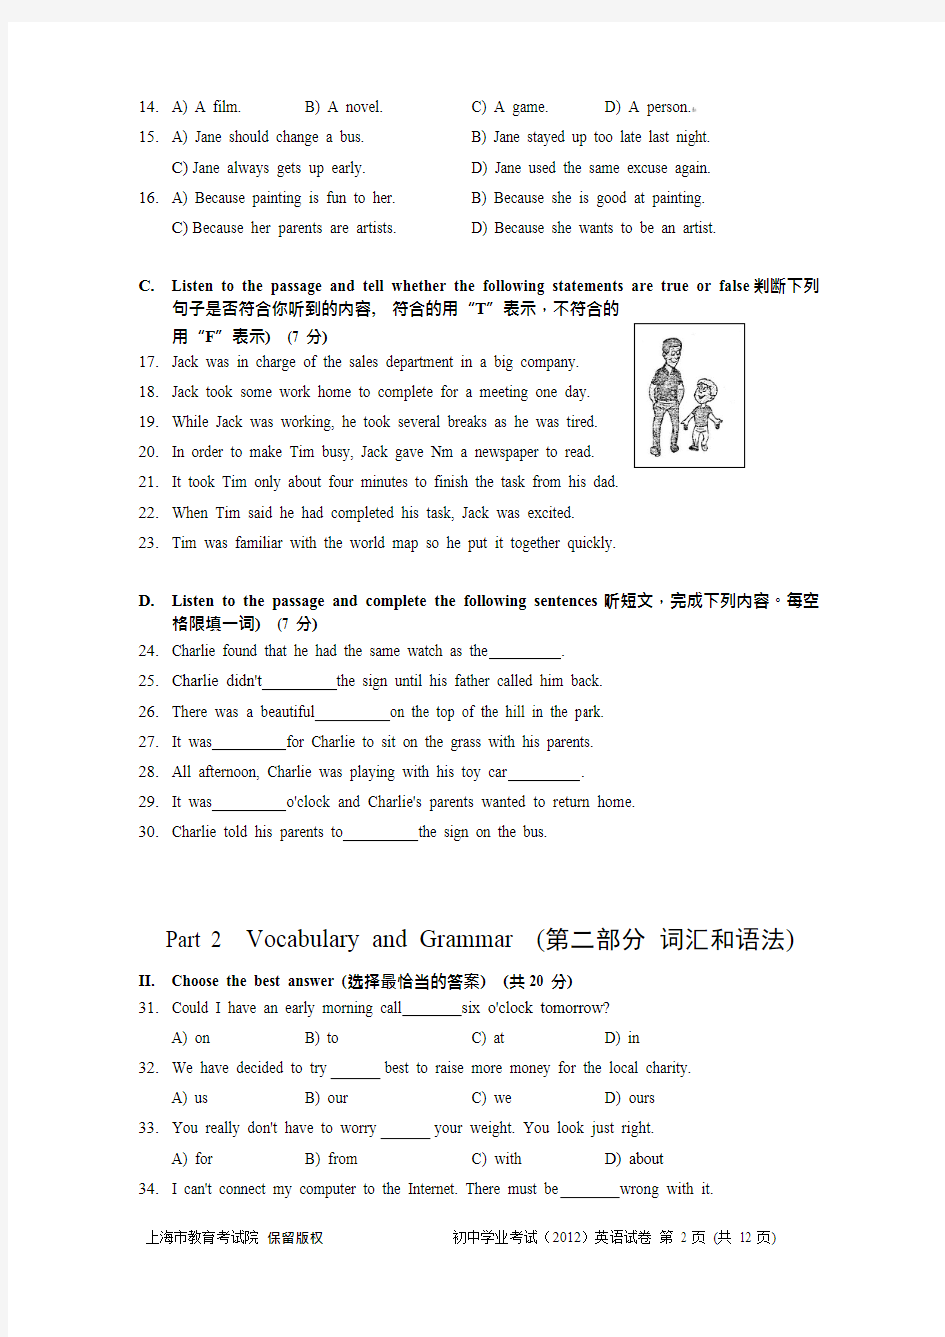 2012年上海中考英语试题及答案版,推荐文档